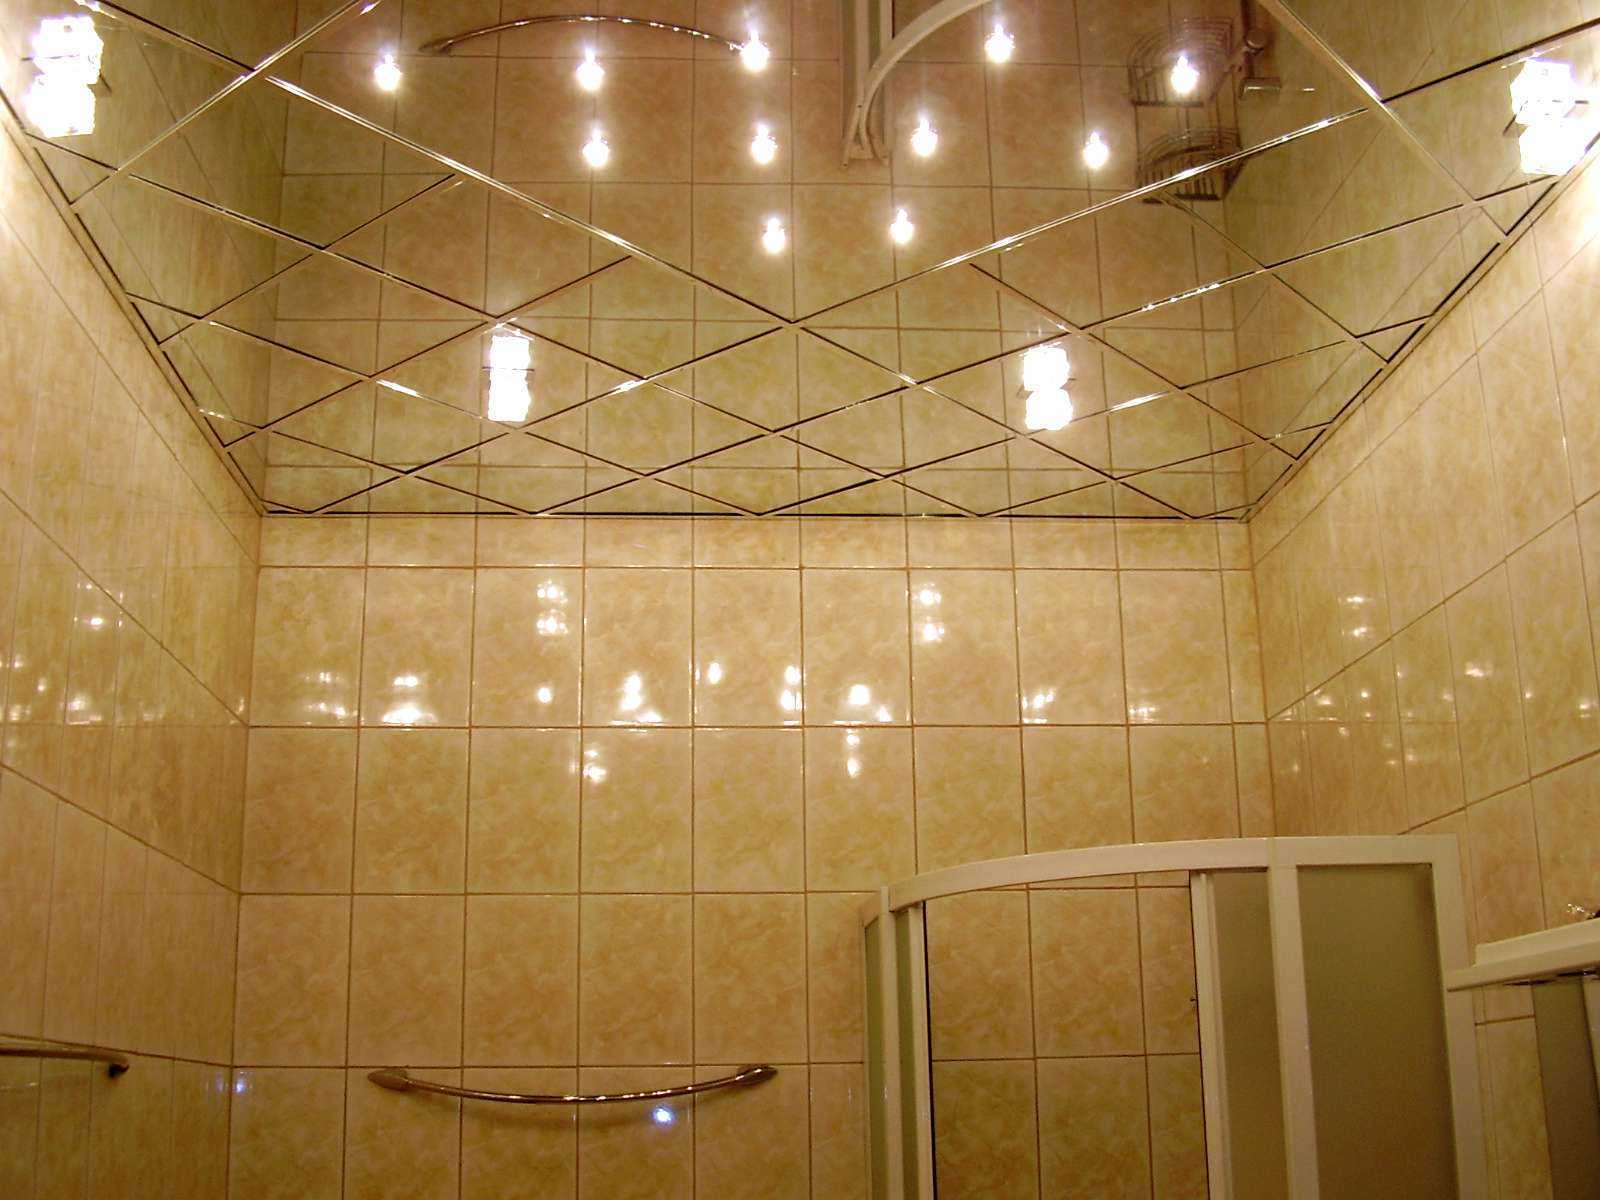  зеркальная плитка в ванной: фото и описание материала